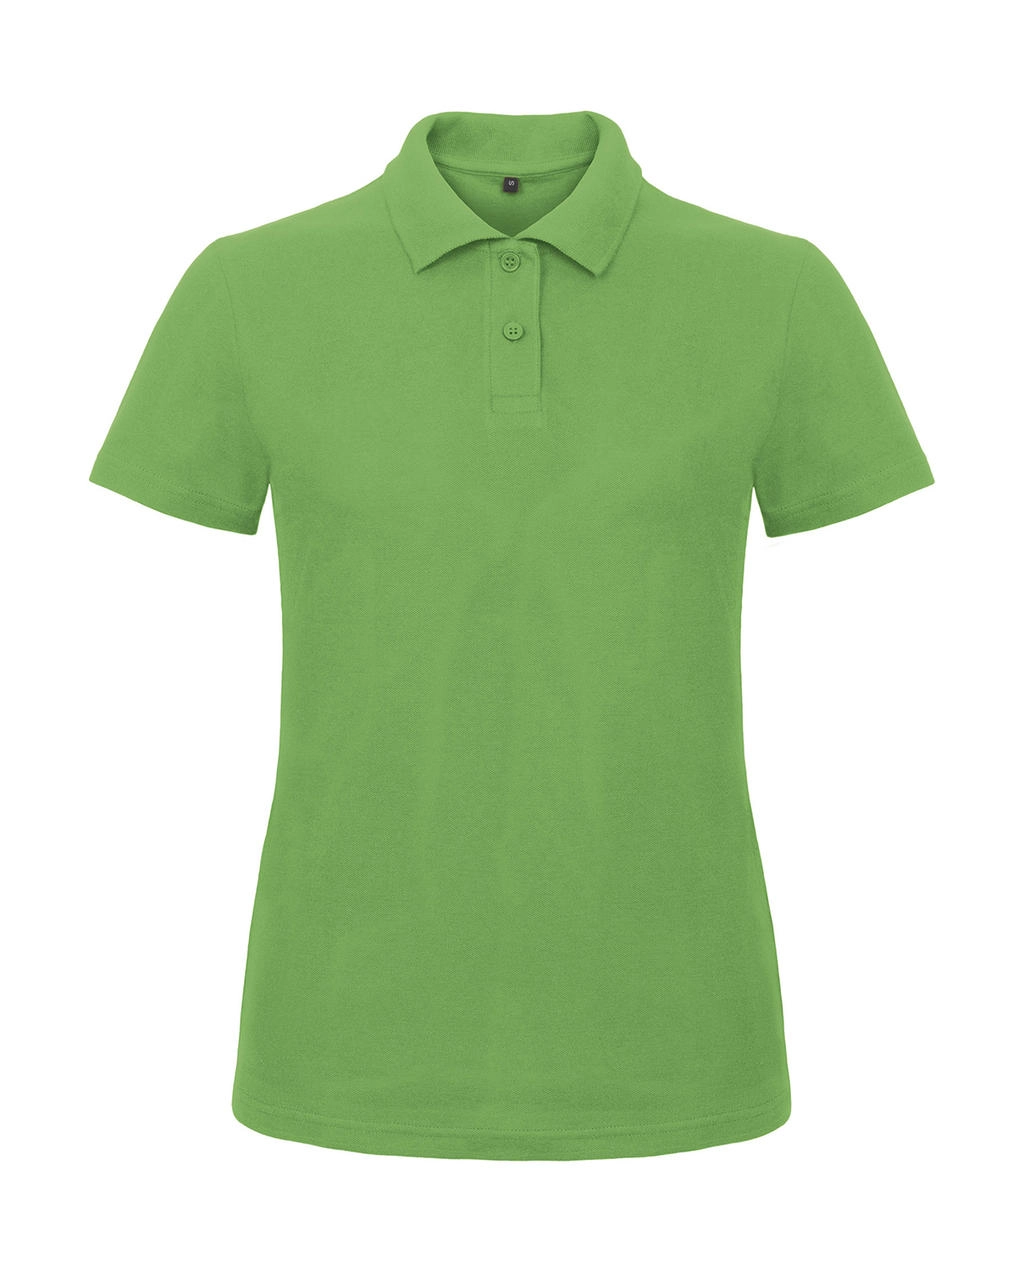 ID.001/women Piqué Polo Shirt zum Besticken und Bedrucken in der Farbe Real Green mit Ihren Logo, Schriftzug oder Motiv.